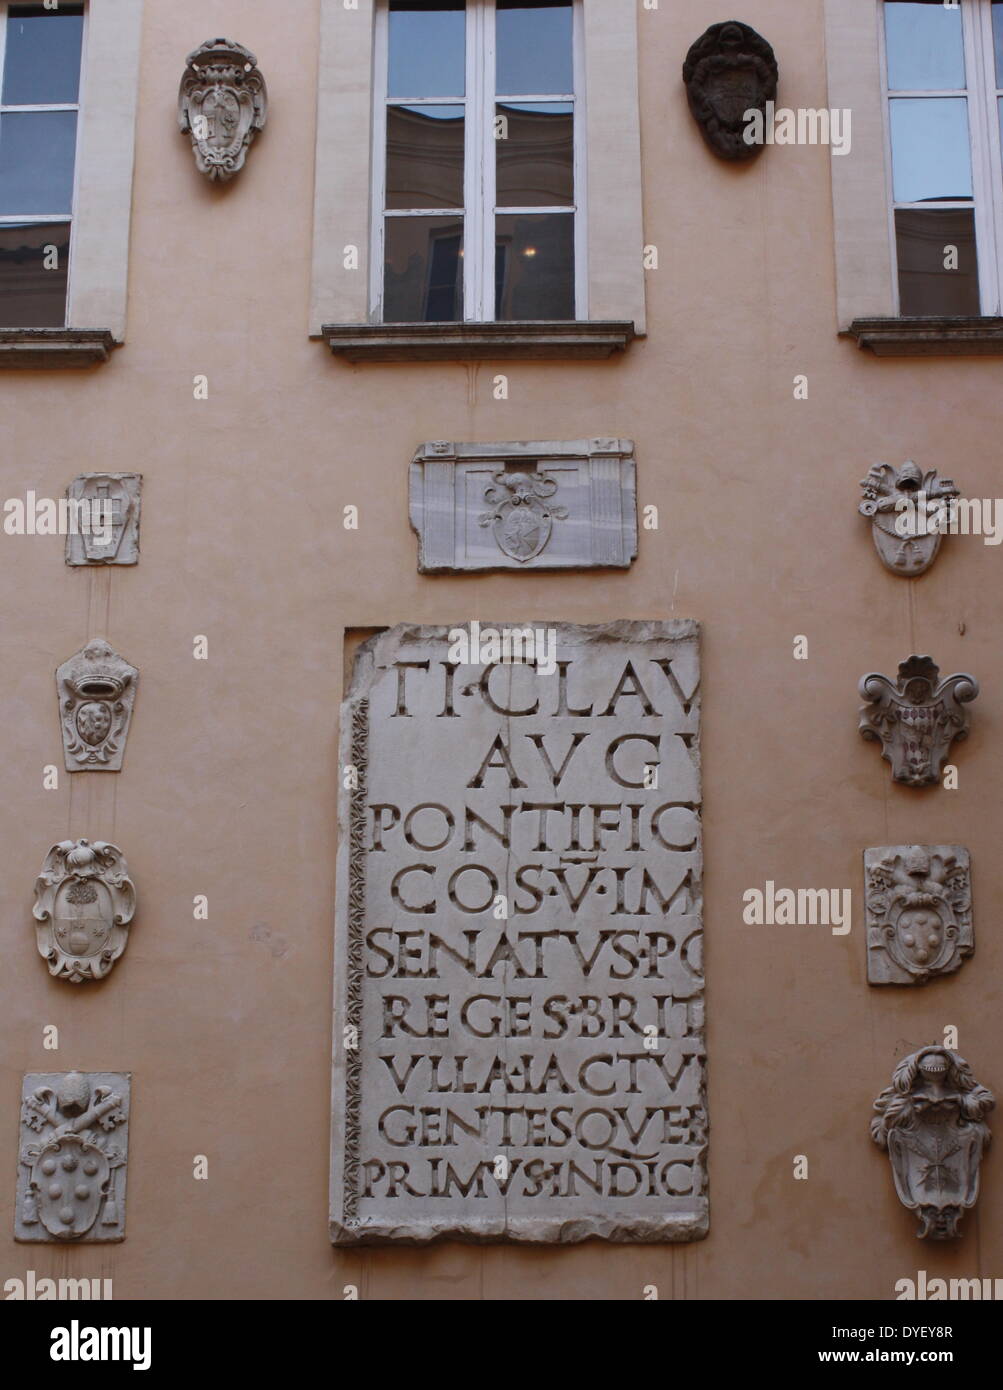 Lateinische Inschrift Detail aus der Eingang/Hof, der capitolini Museen in Rom, Italien. Die Museen selbst innerhalb von 3 Palazzi nach Entwürfen von Michelangelo Buonarroti im Jahr 1536 enthalten sind, wurden sie dann über einen 400 Jahre gebaut. Stockfoto